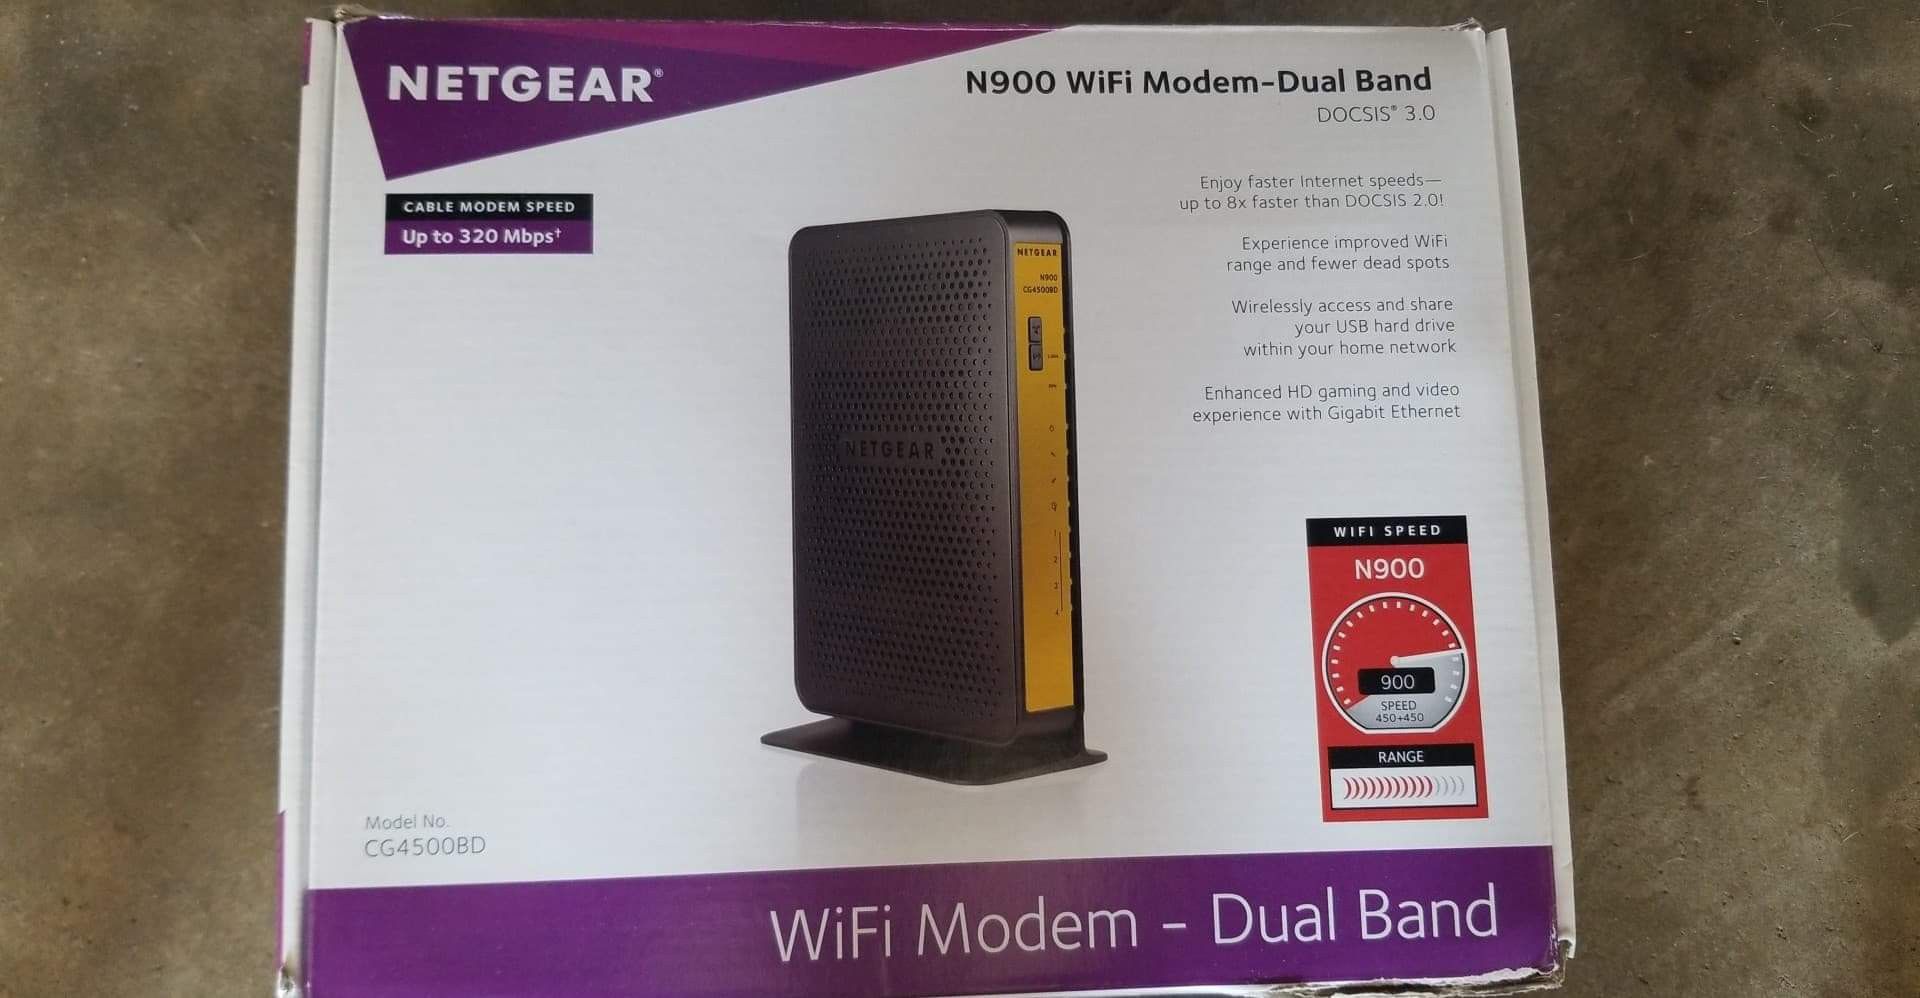 N900 WIFI Modem - Dual Band